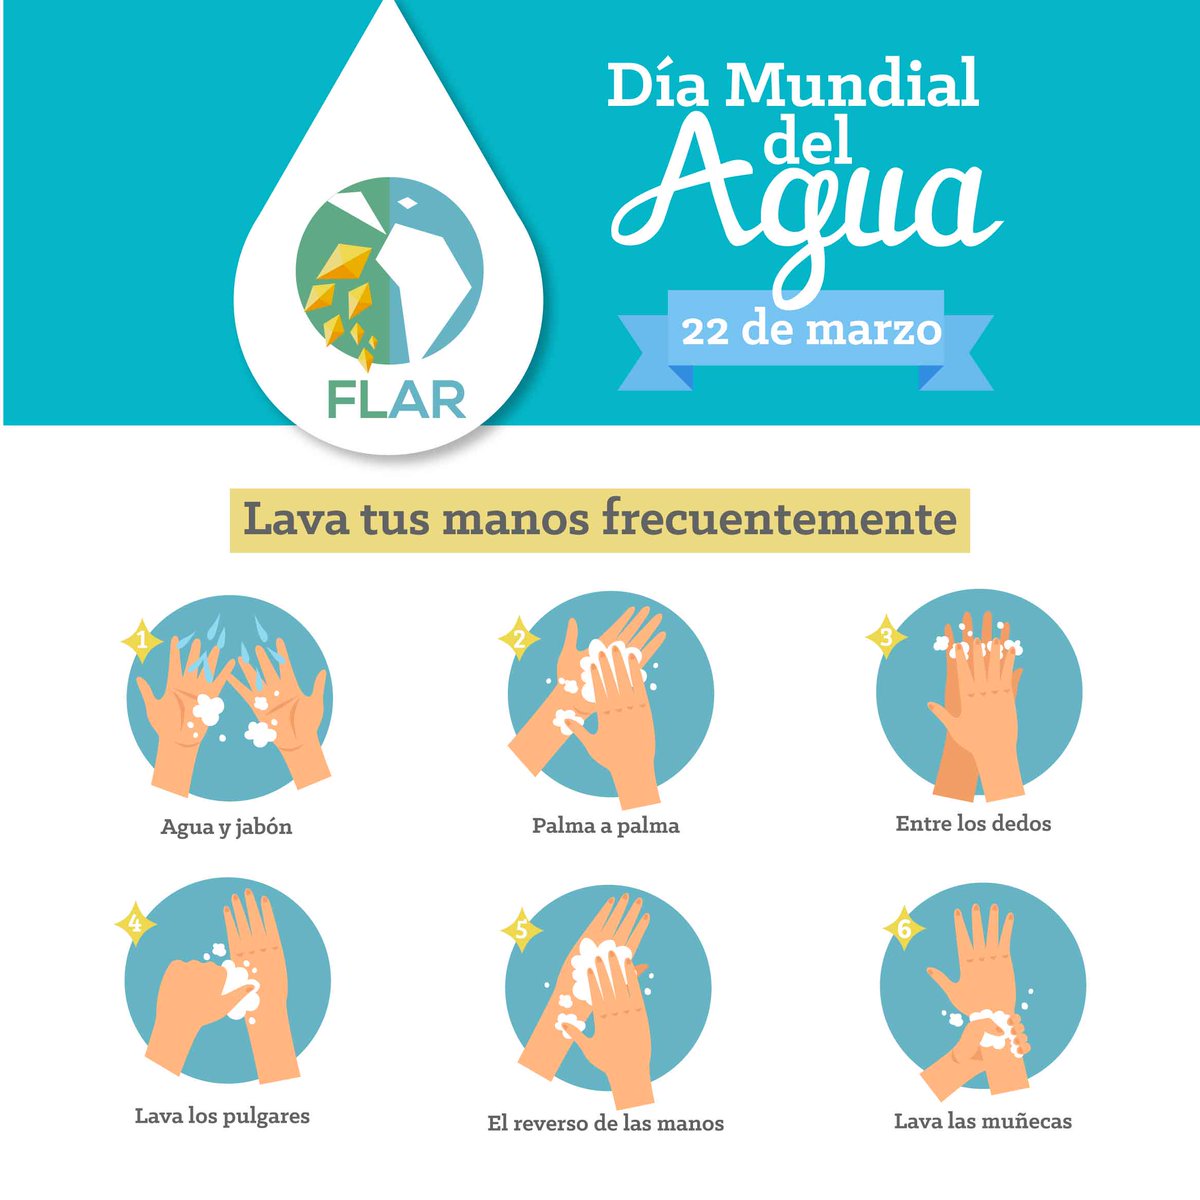 Este 22 de marzo #DíaMundialDelAgua, y todos los días, te invitamos a lavarte las manos, salvar vidas y evitar la propagación del #COVID19. Con este sencillo acto demostramos nuestro compromiso en la lucha contra este virus. ¿Ya te lavaste las manos? 👐🚿
#ManosLimpias #SafeHands